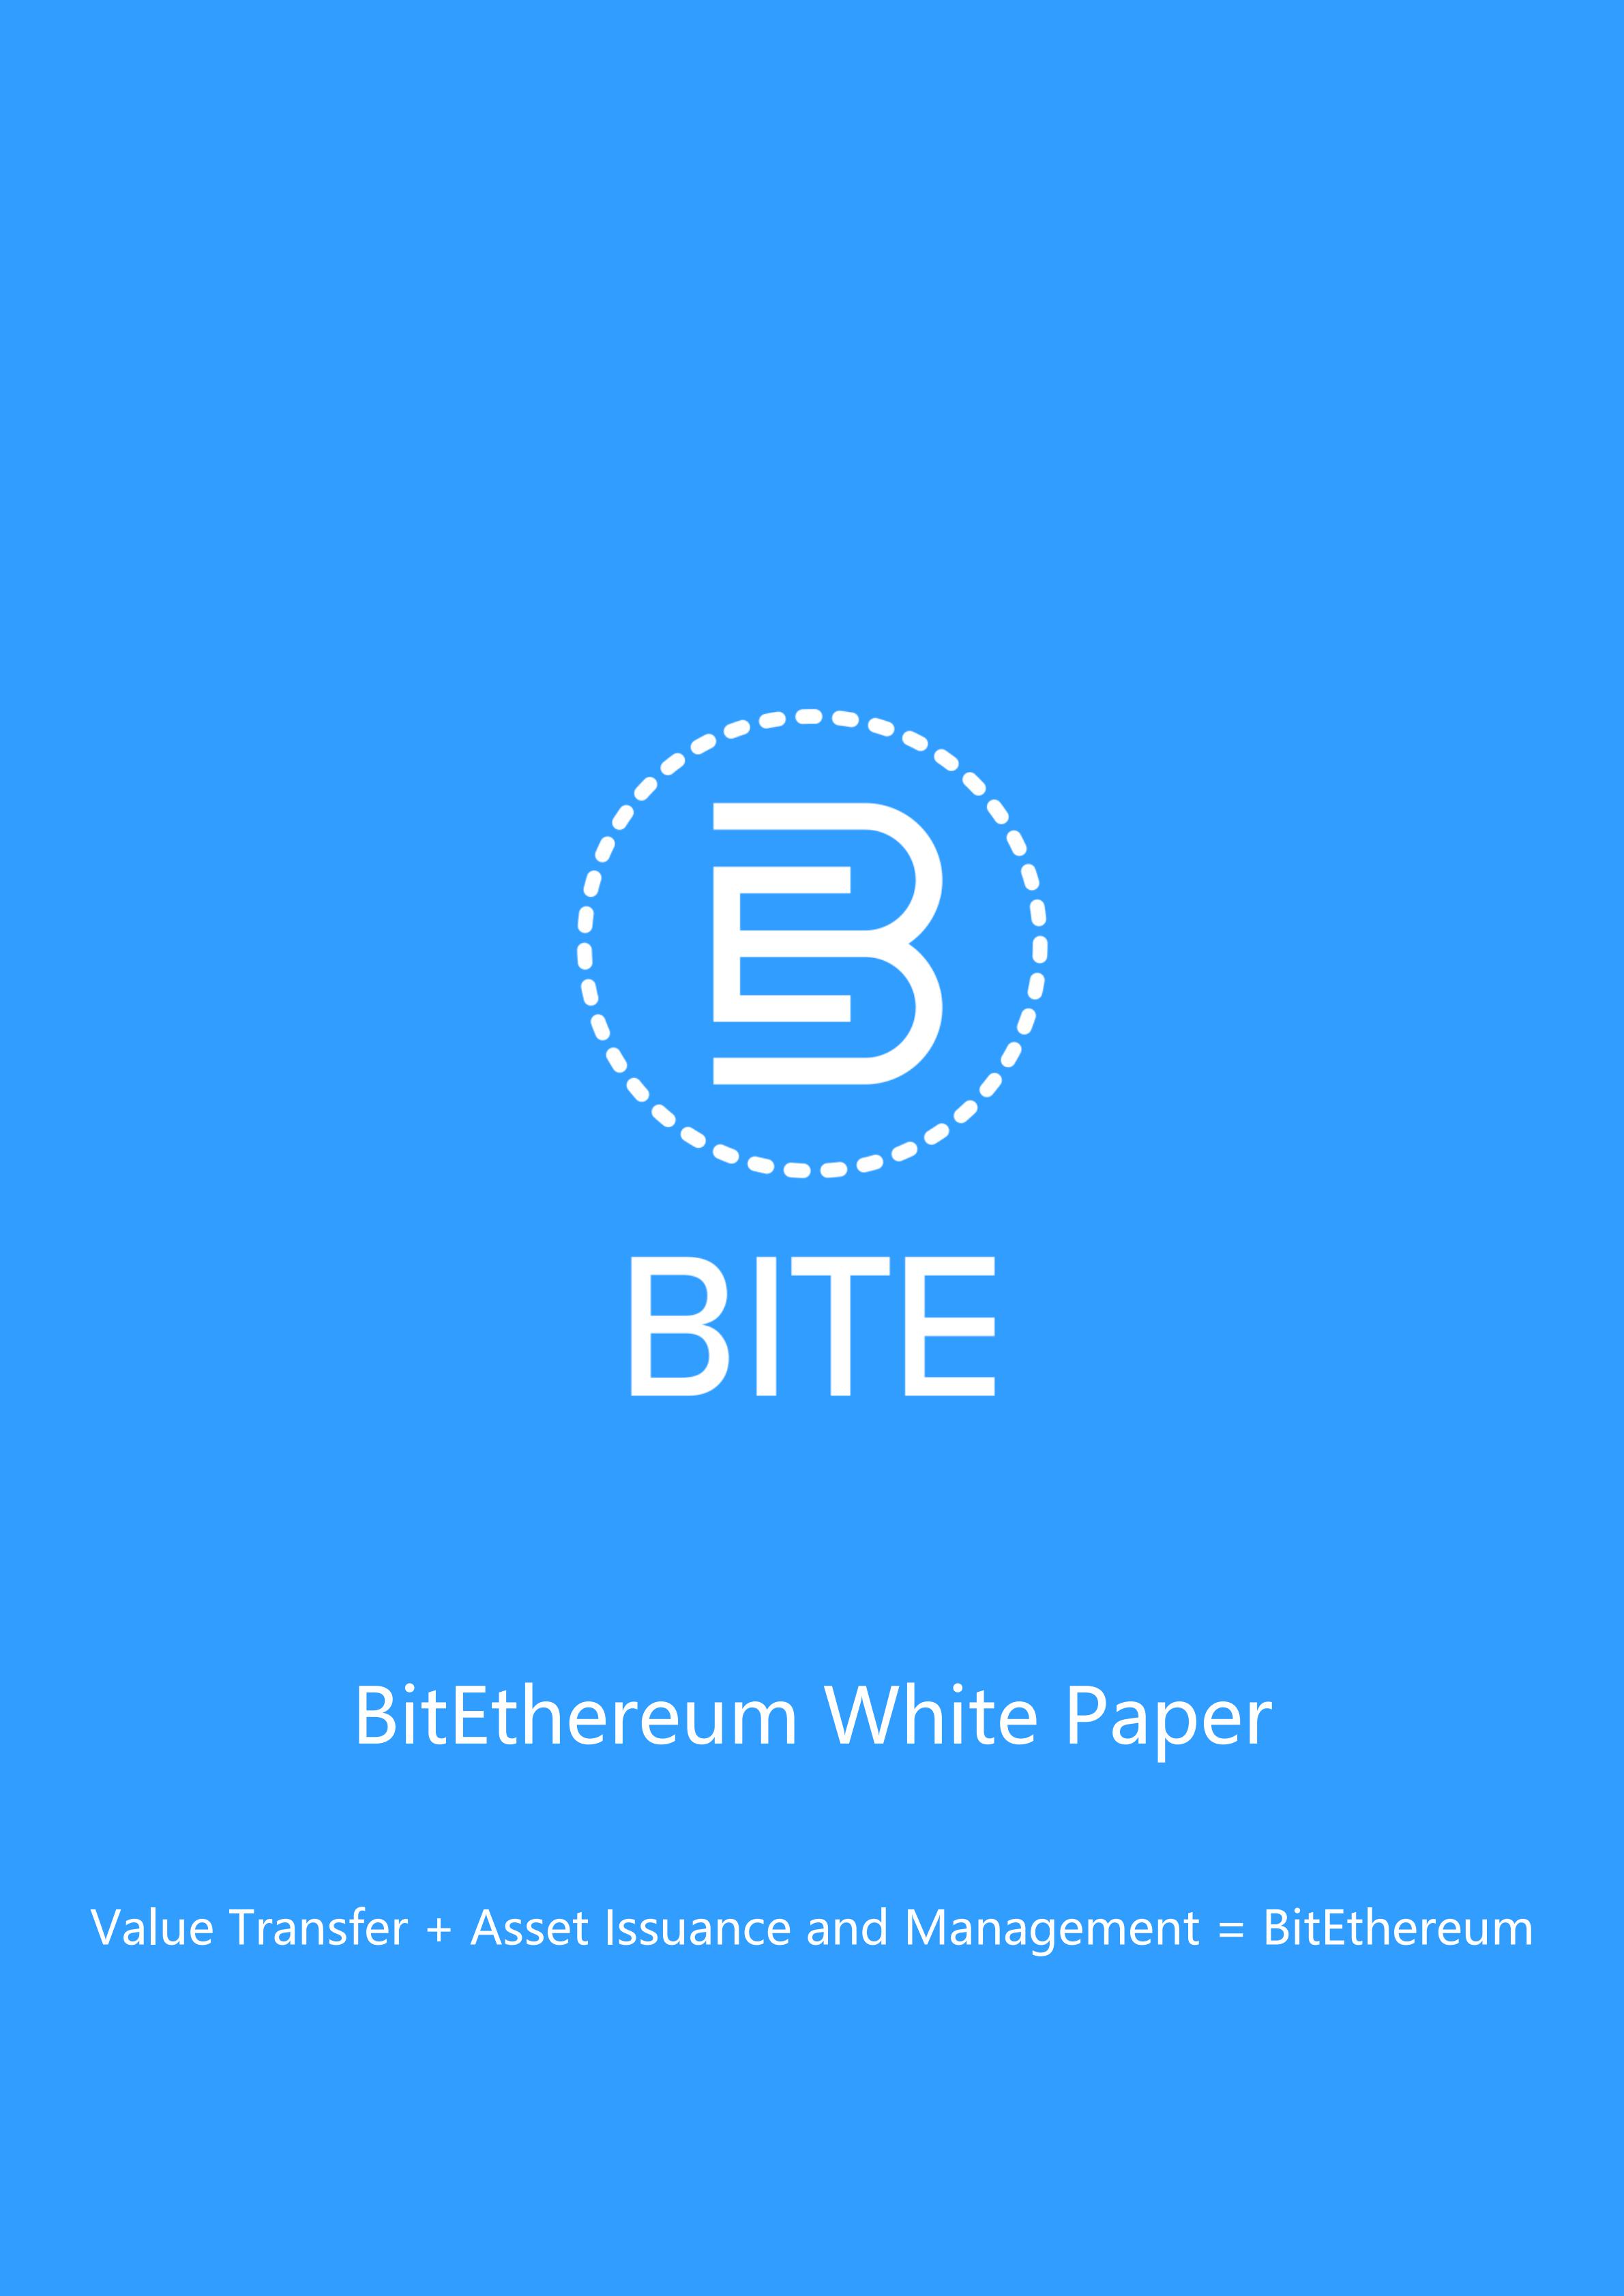 BITE_BitEthereum_White_Paper_en_00.jpg